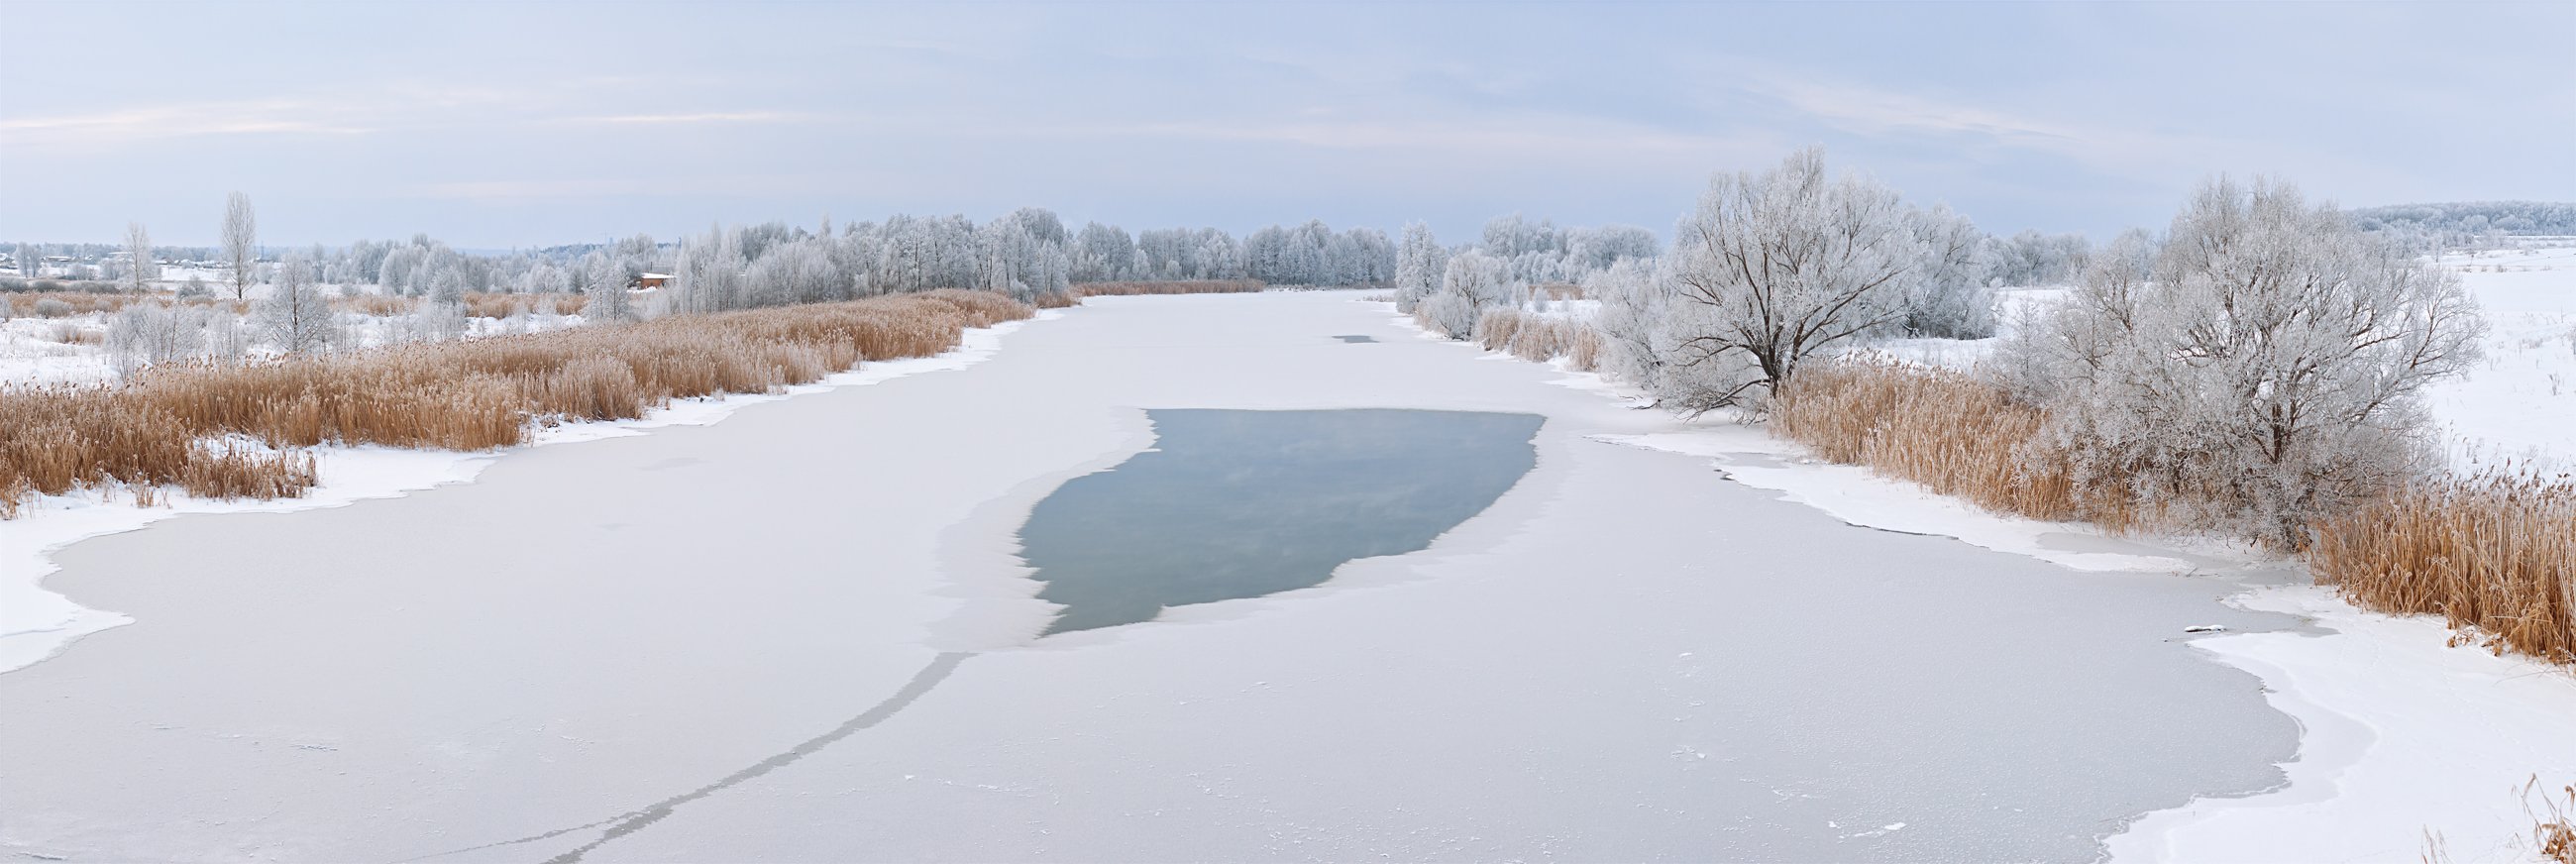 река,снег,вода,лед,свет,деревья,небо, Юрий Котов